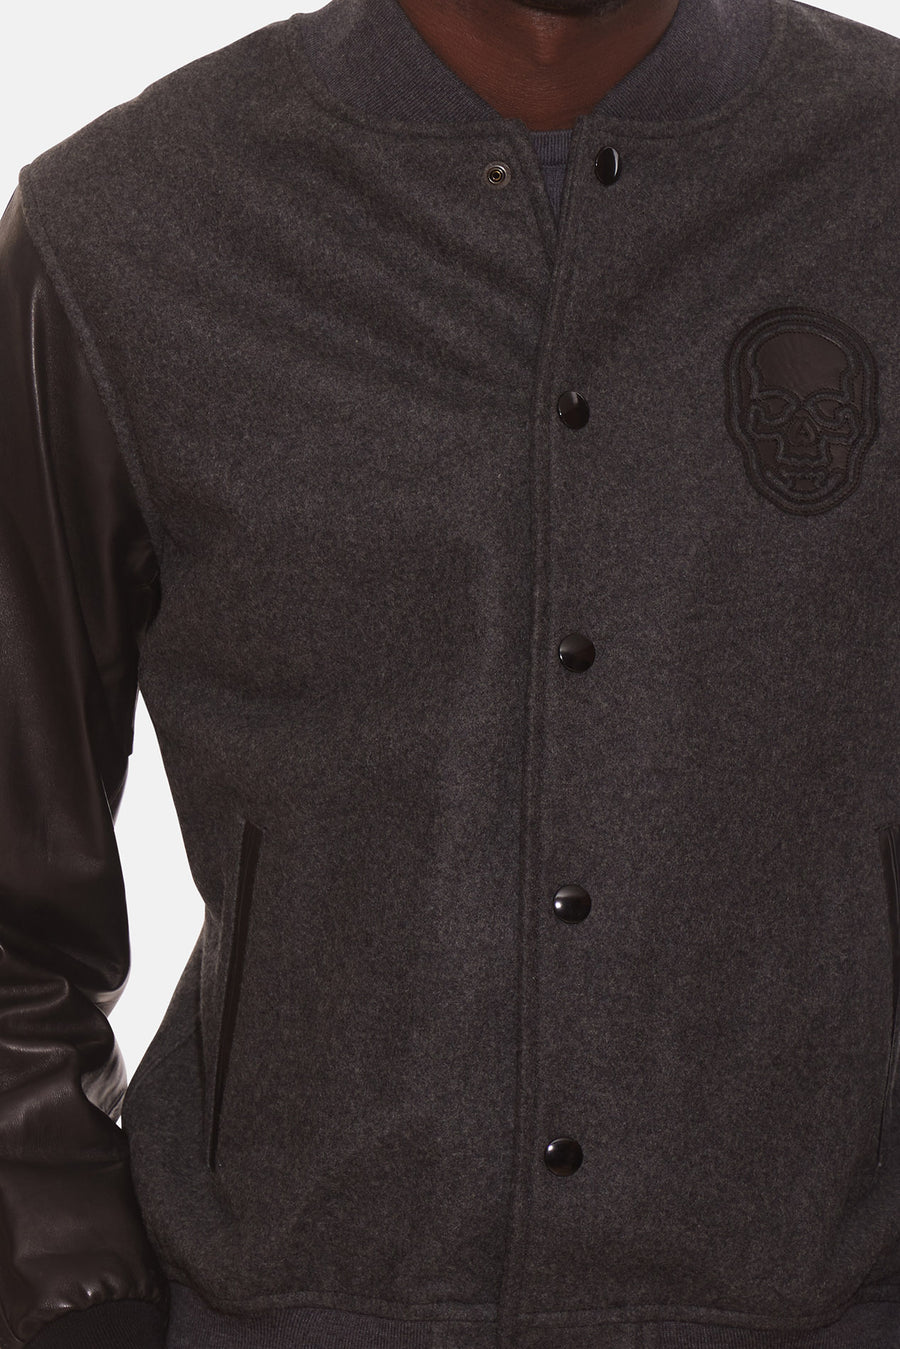 Cashmere Leather Jacket Heather Grey/Black